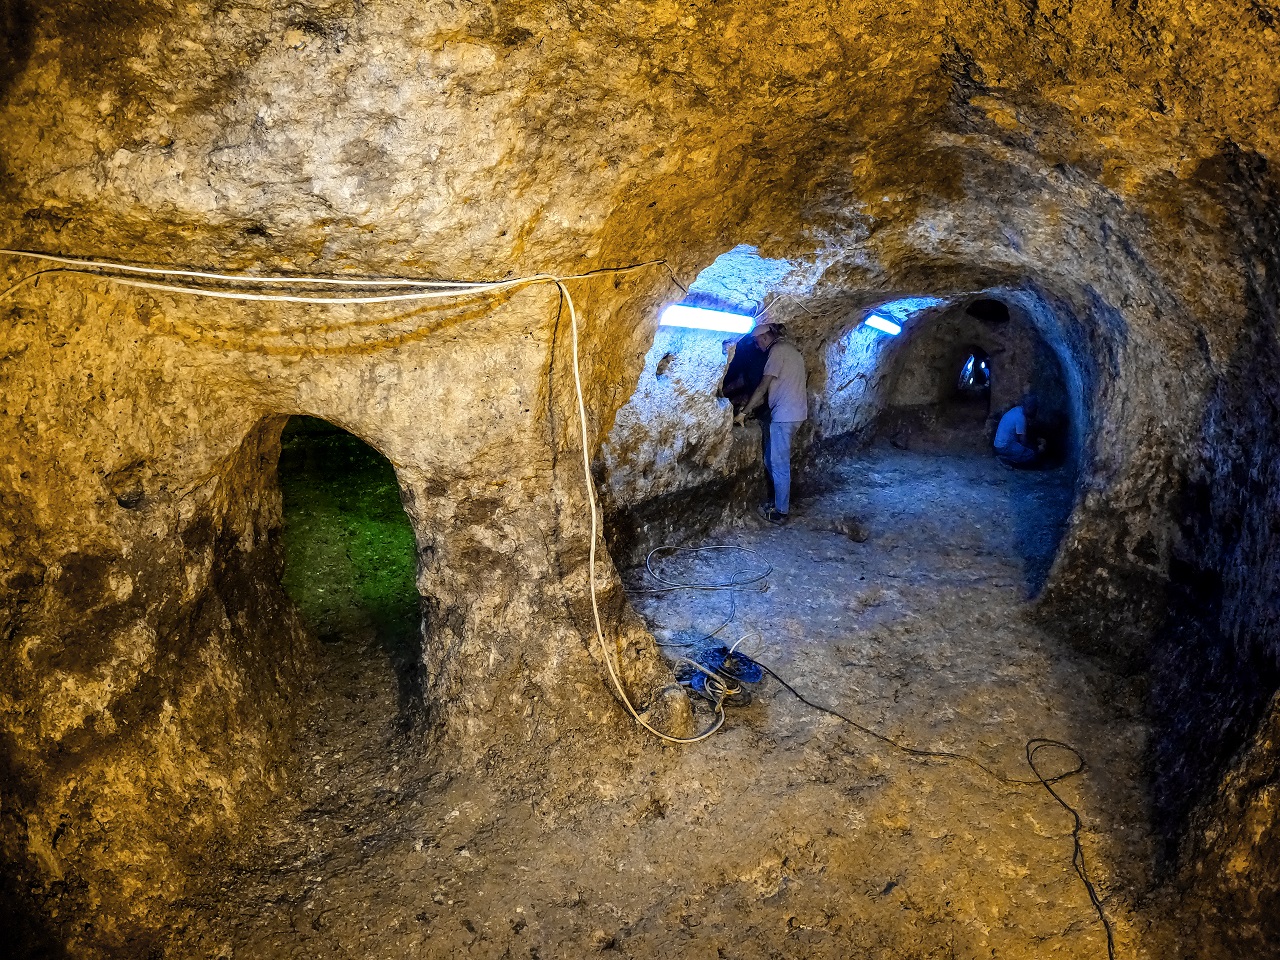 Konya'da tesadüfen keşfedilen antik yer altı şehri heyecanlandırdı